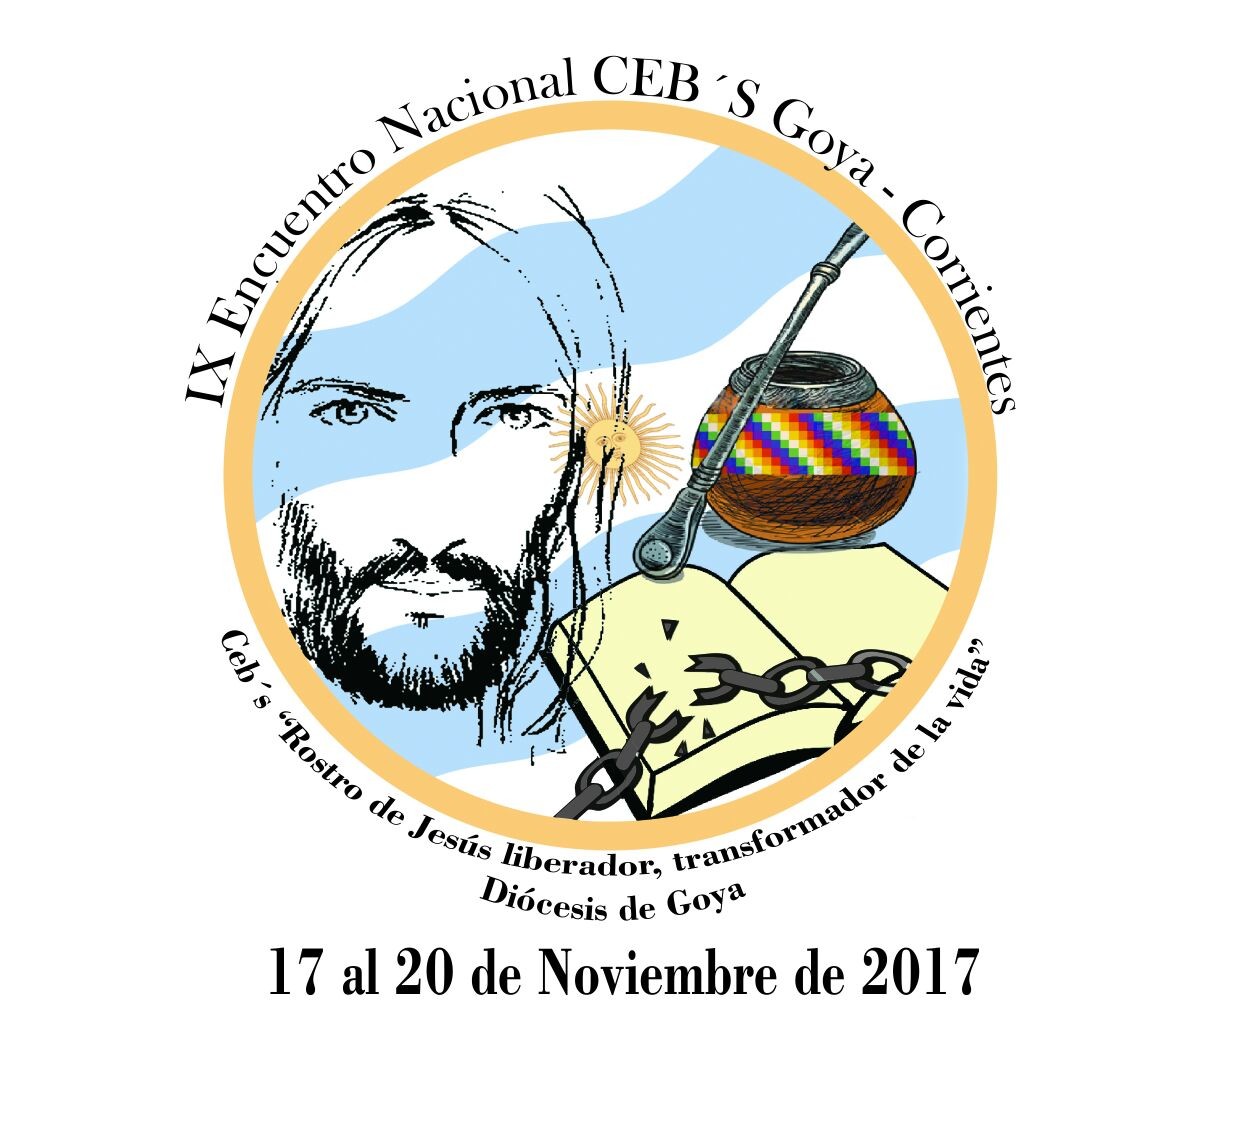 IX Encuentro  Nacional  de Comunidades Eclesiais  de Base de Argentina 17 al 20 de Noviembre 2017 Goya- Corrientes